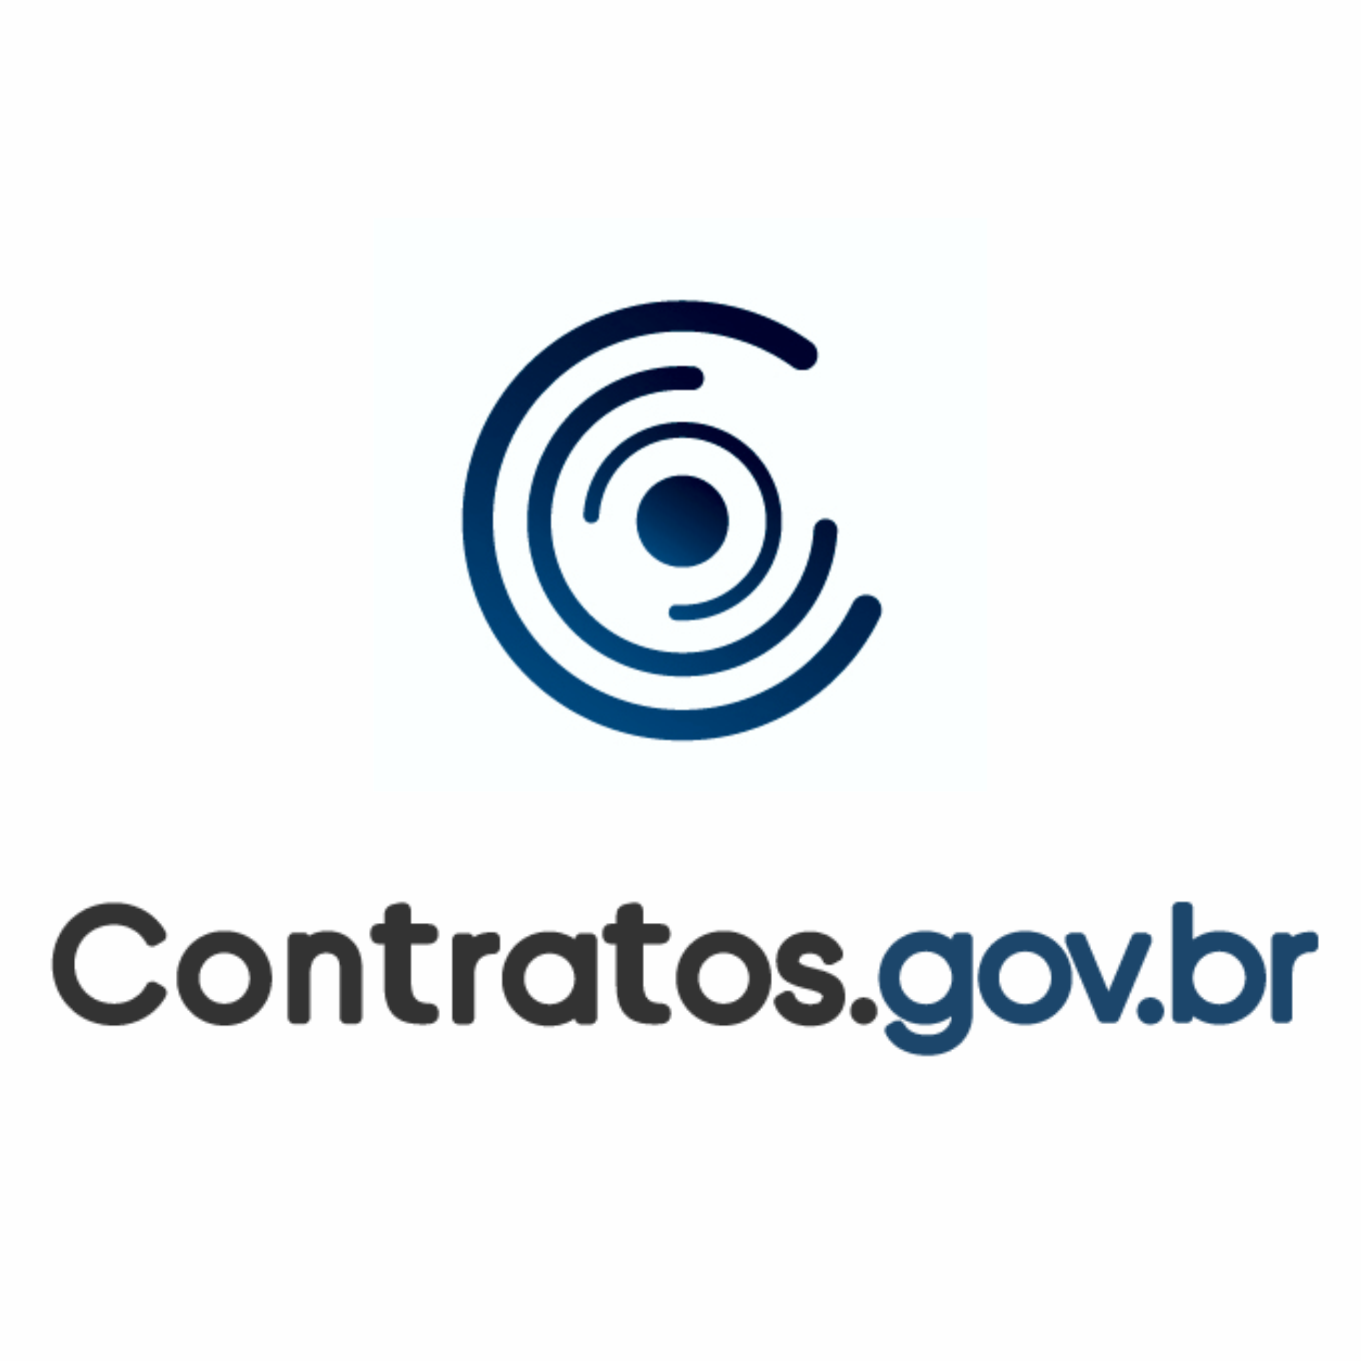 Treinamento Contratos.gov.br - JFRJ - 2023